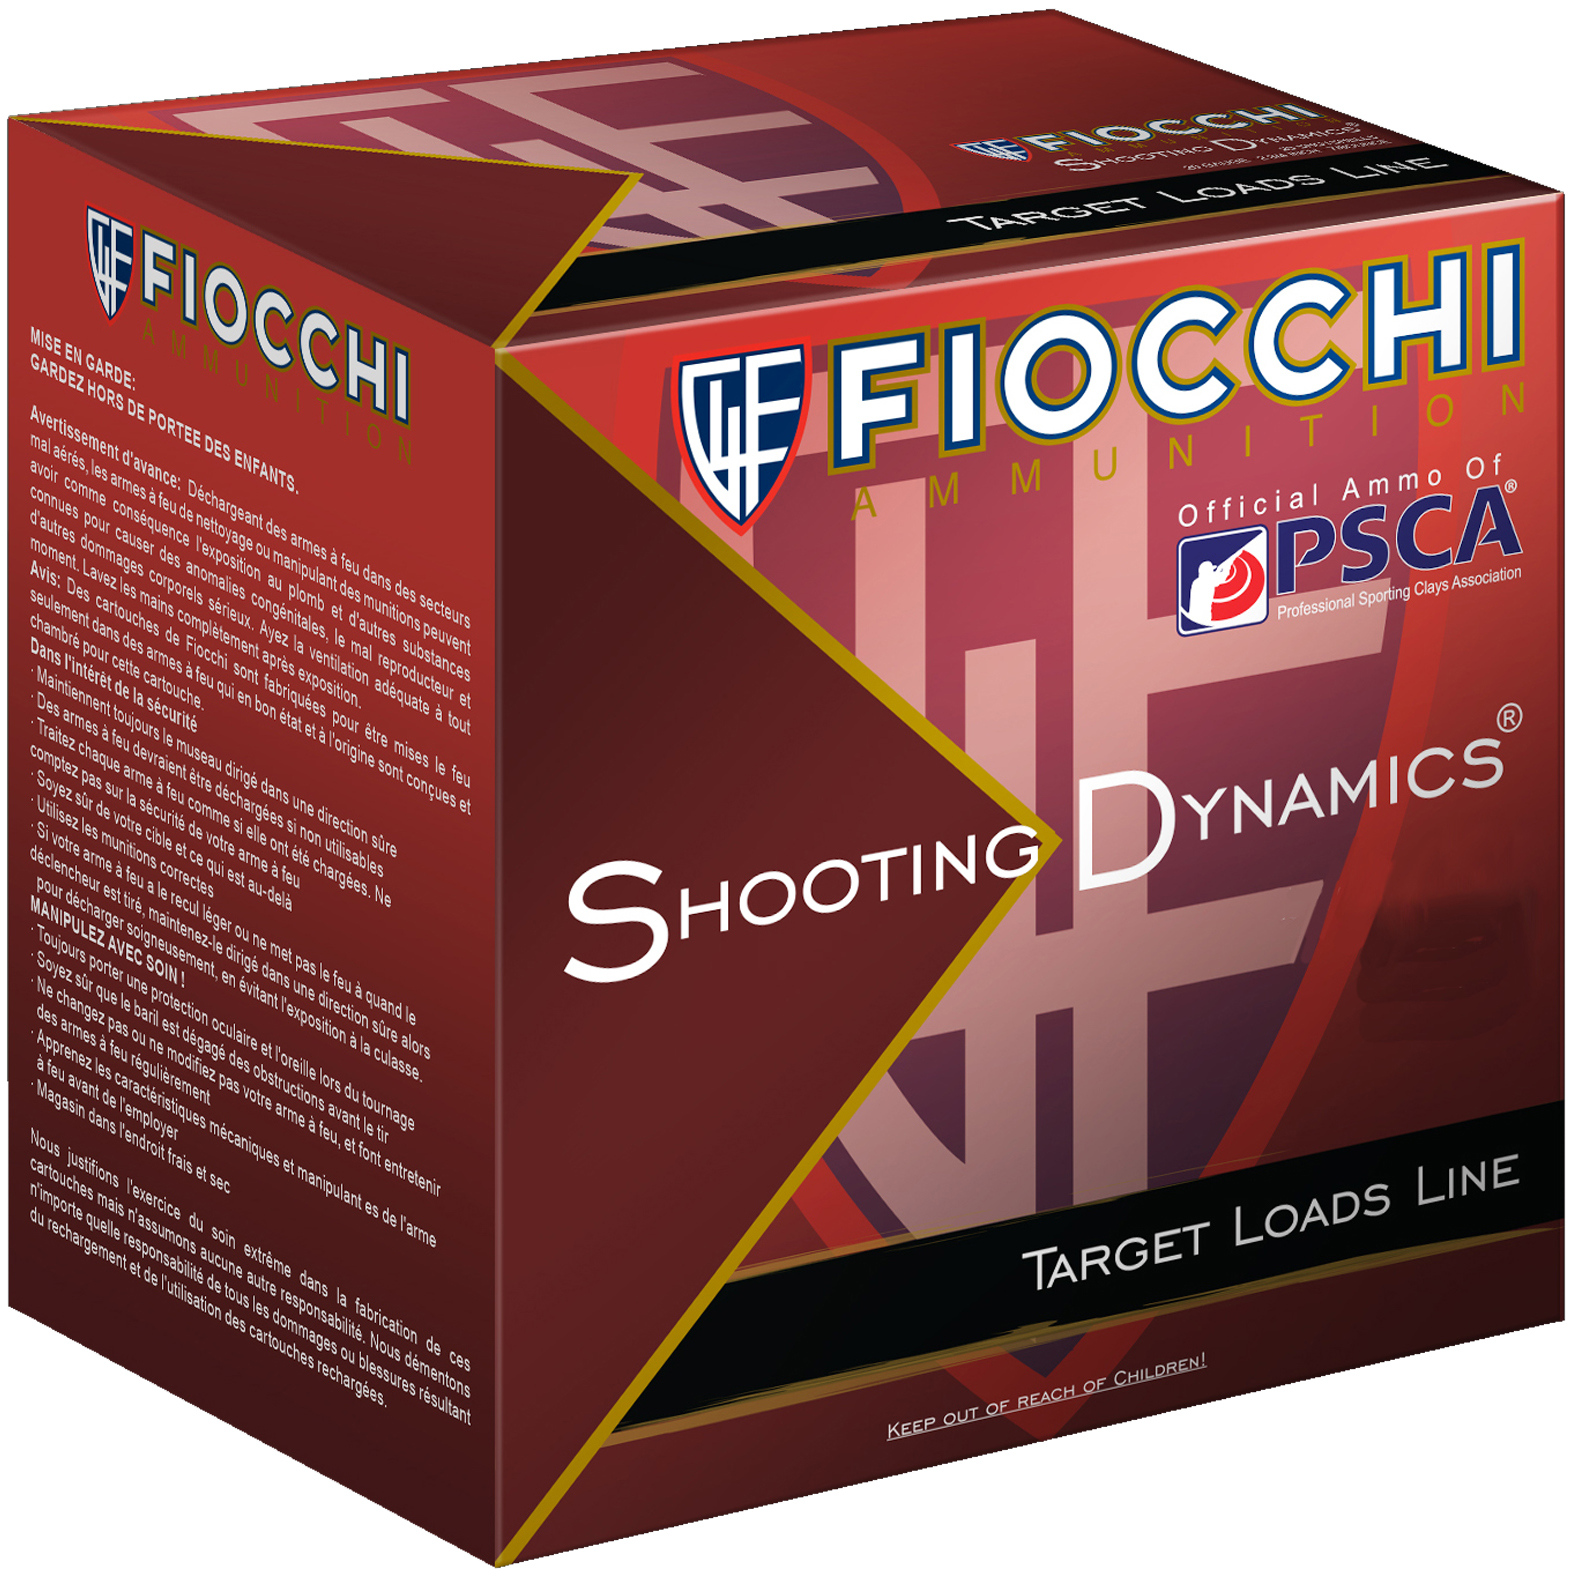 Fiocchi Shooting Dynamics Heavy Dynamic Lead 1oz Ammo